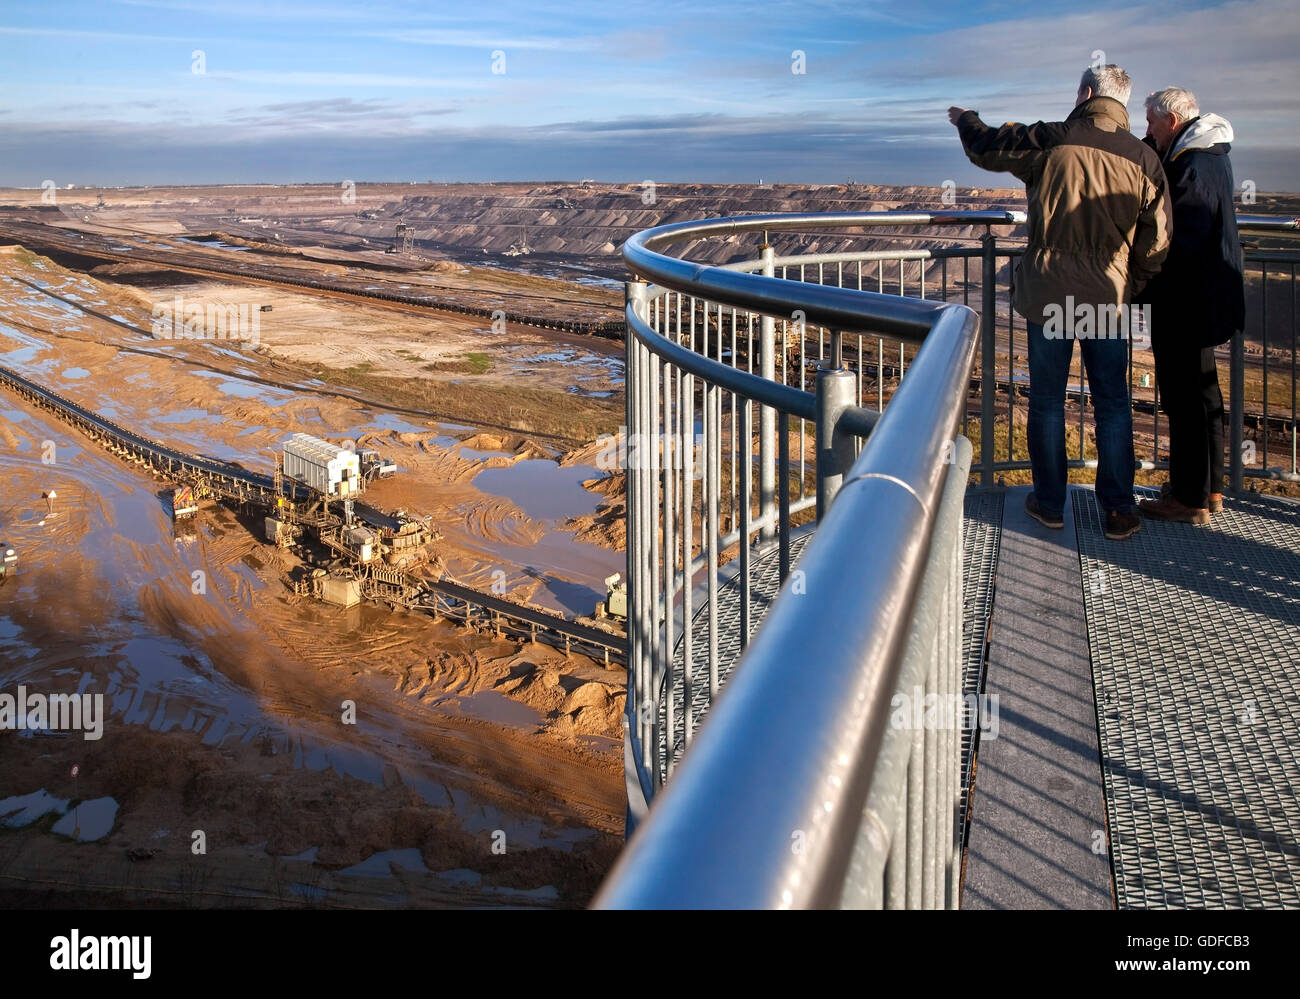 Deux hommes sur le pont d'observation Jackerath, les mines à ciel ouvert, lignite, Garzweiler, Jüchen, Rhénanie du Nord-Westphalie, Allemagne Banque D'Images